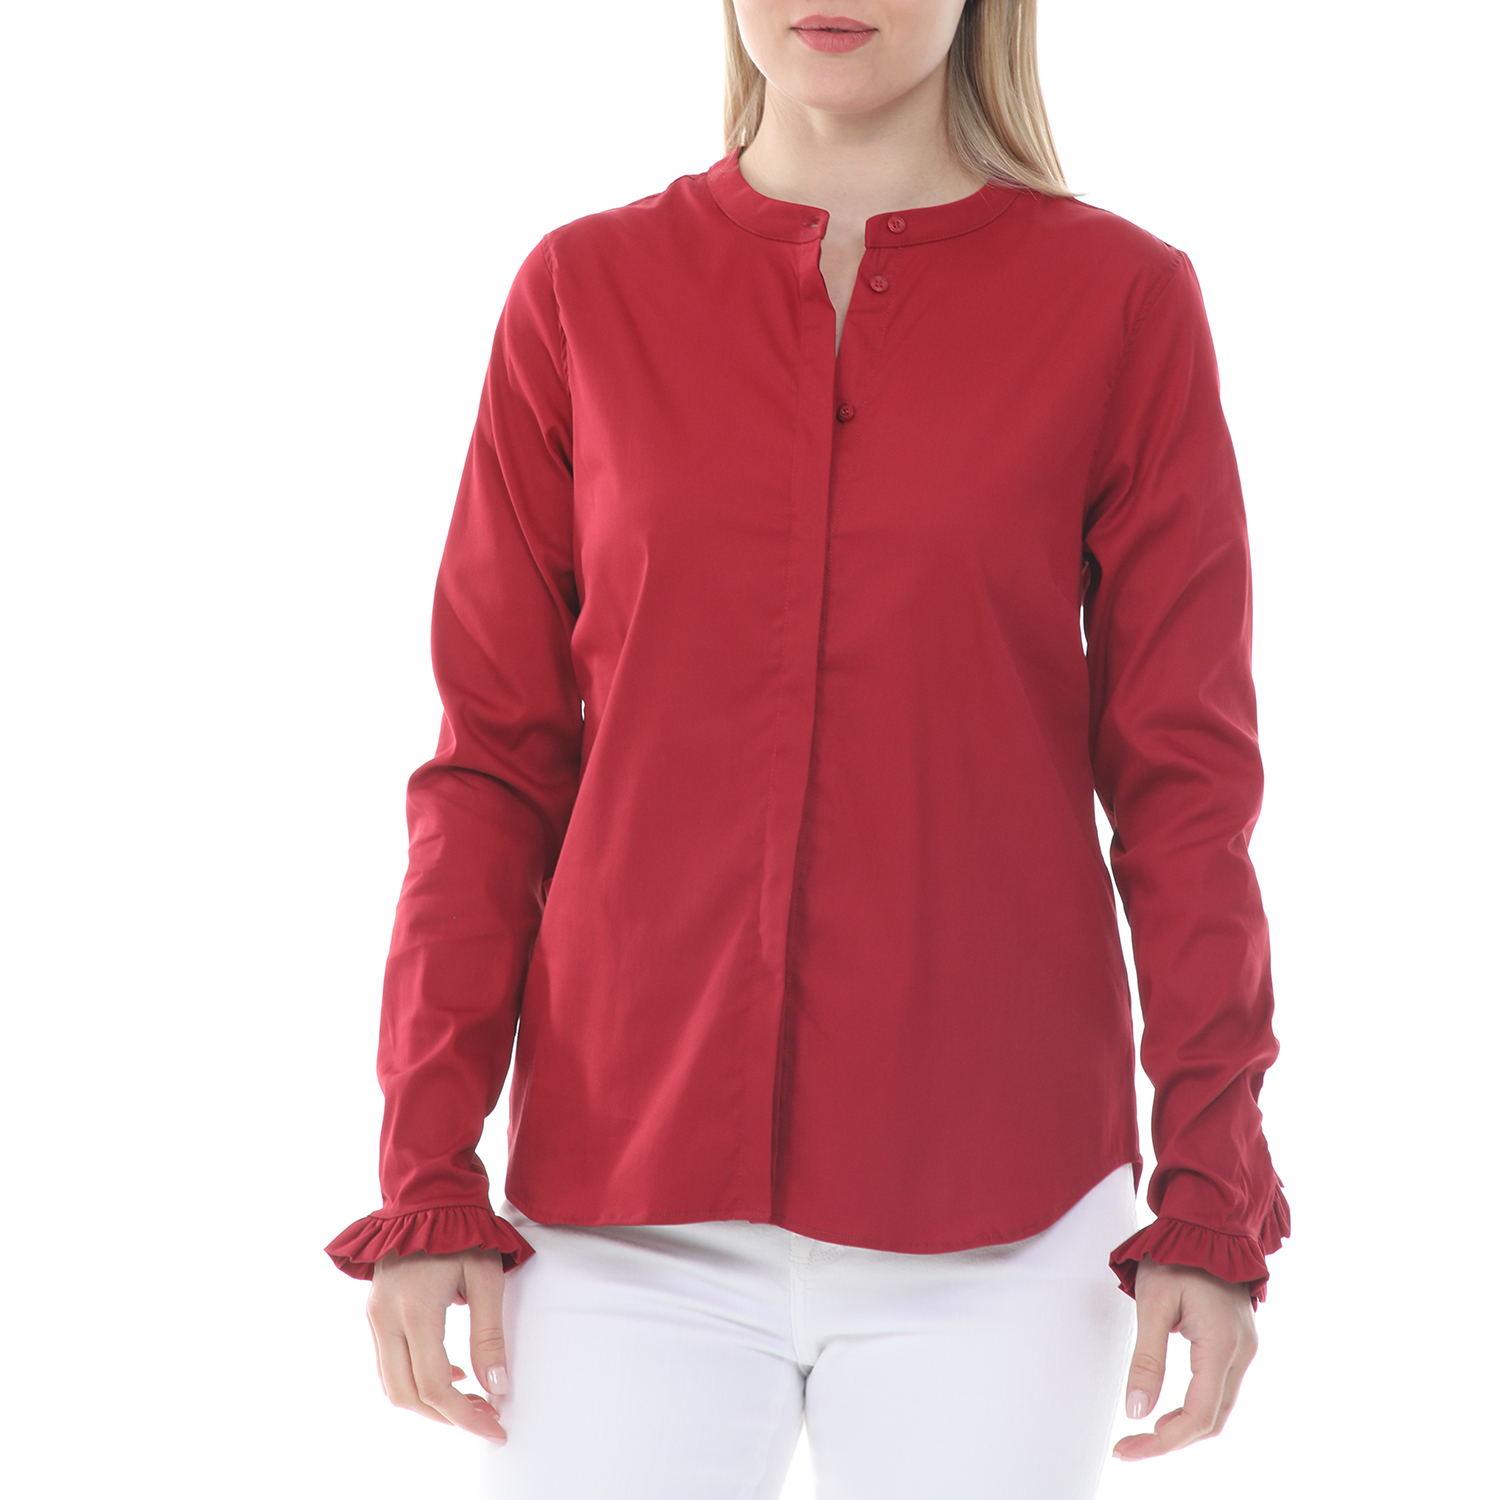 Γυναικεία/Ρούχα/Πουκάμισα/Μακρυμάνικα MOS MOSH - Γυναικείο πουκάμισο MOS MOSH Mattie Shirt κόκκινο